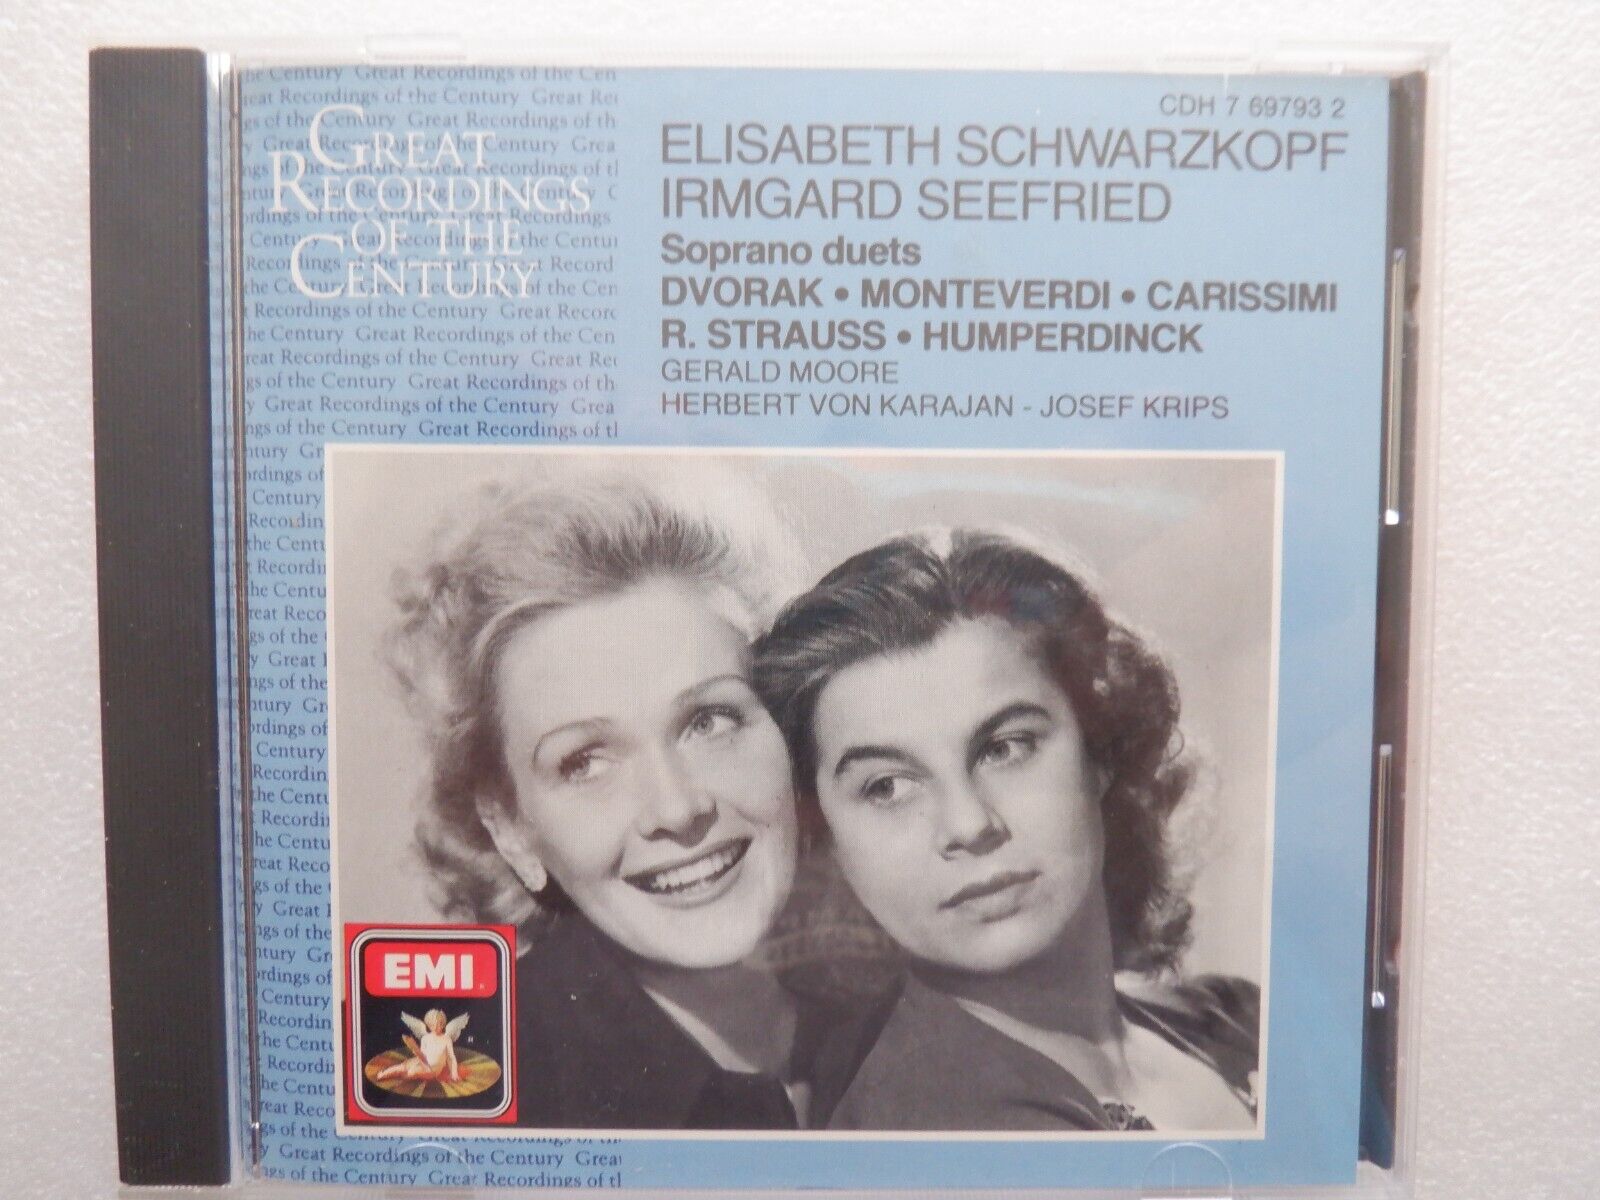 Soprano Duets: Schwarzkopf + Seefried EMI CDH 7 697932 NEAR MINT SWISS IMPORT CD